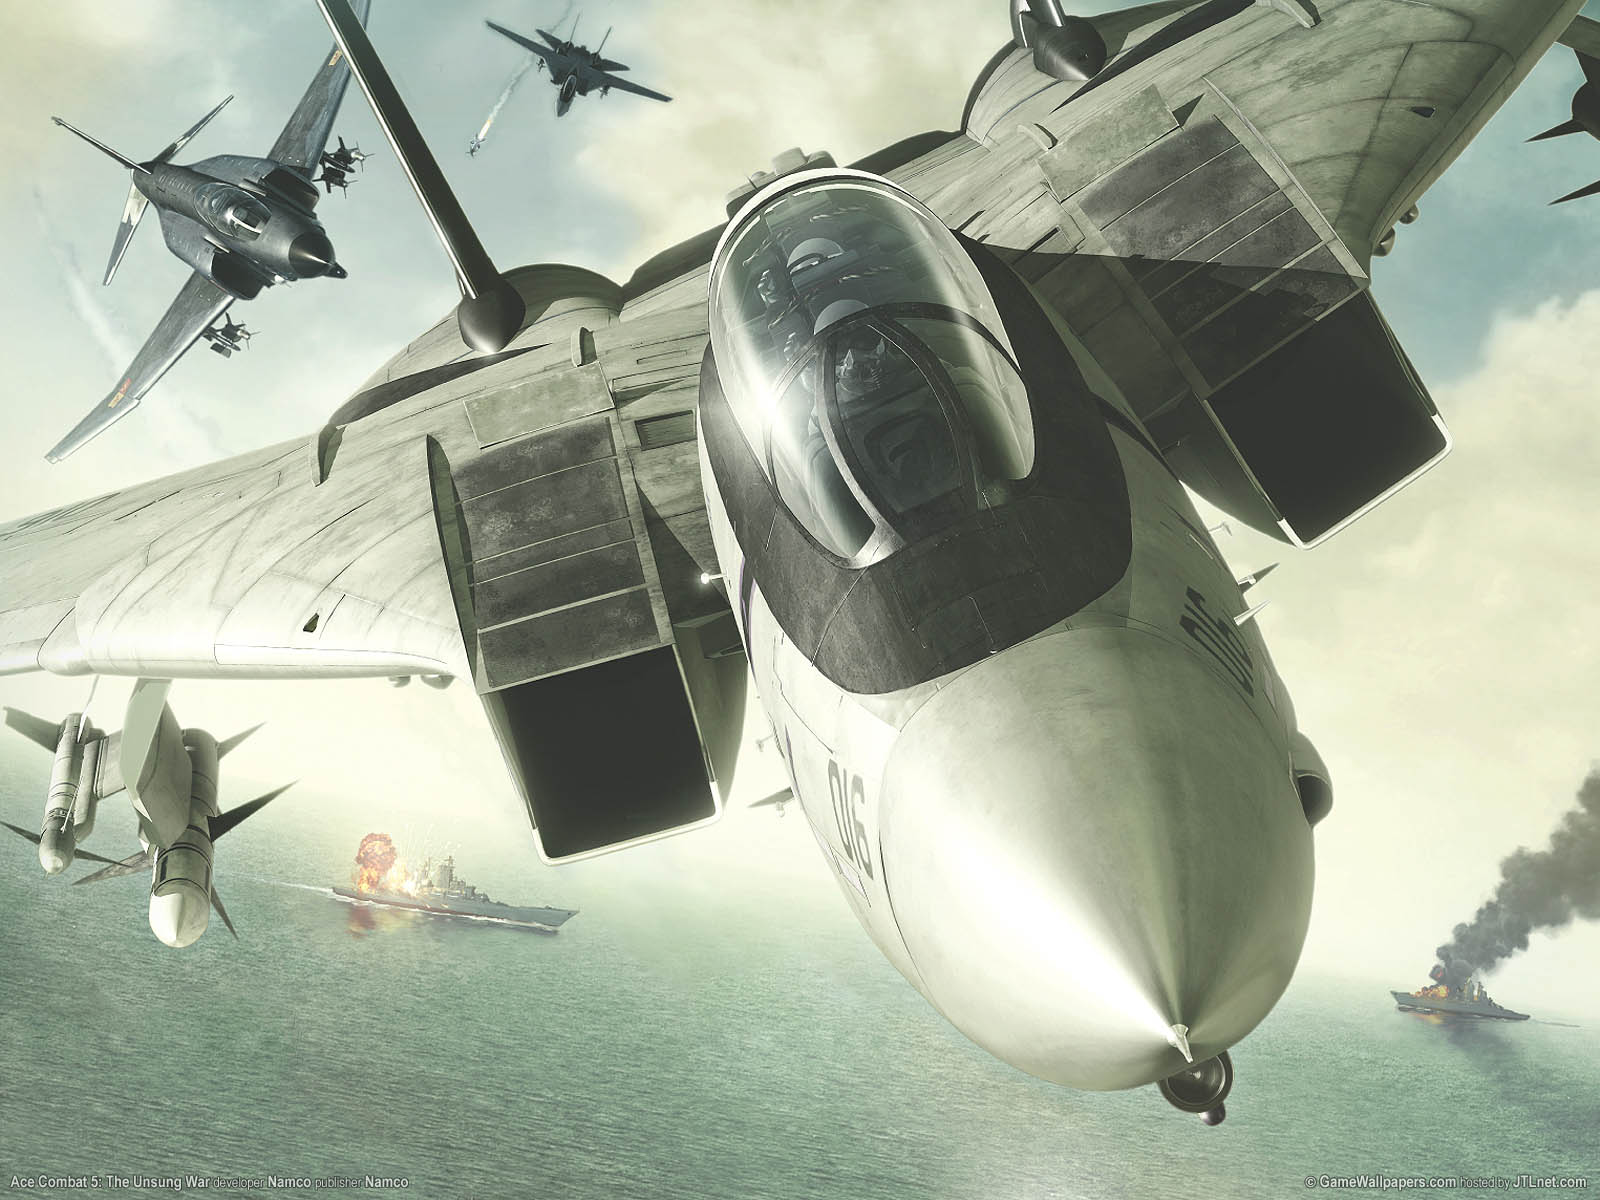 Ace Combat 5: The Unsung War fond d'cran 01 1600x1200